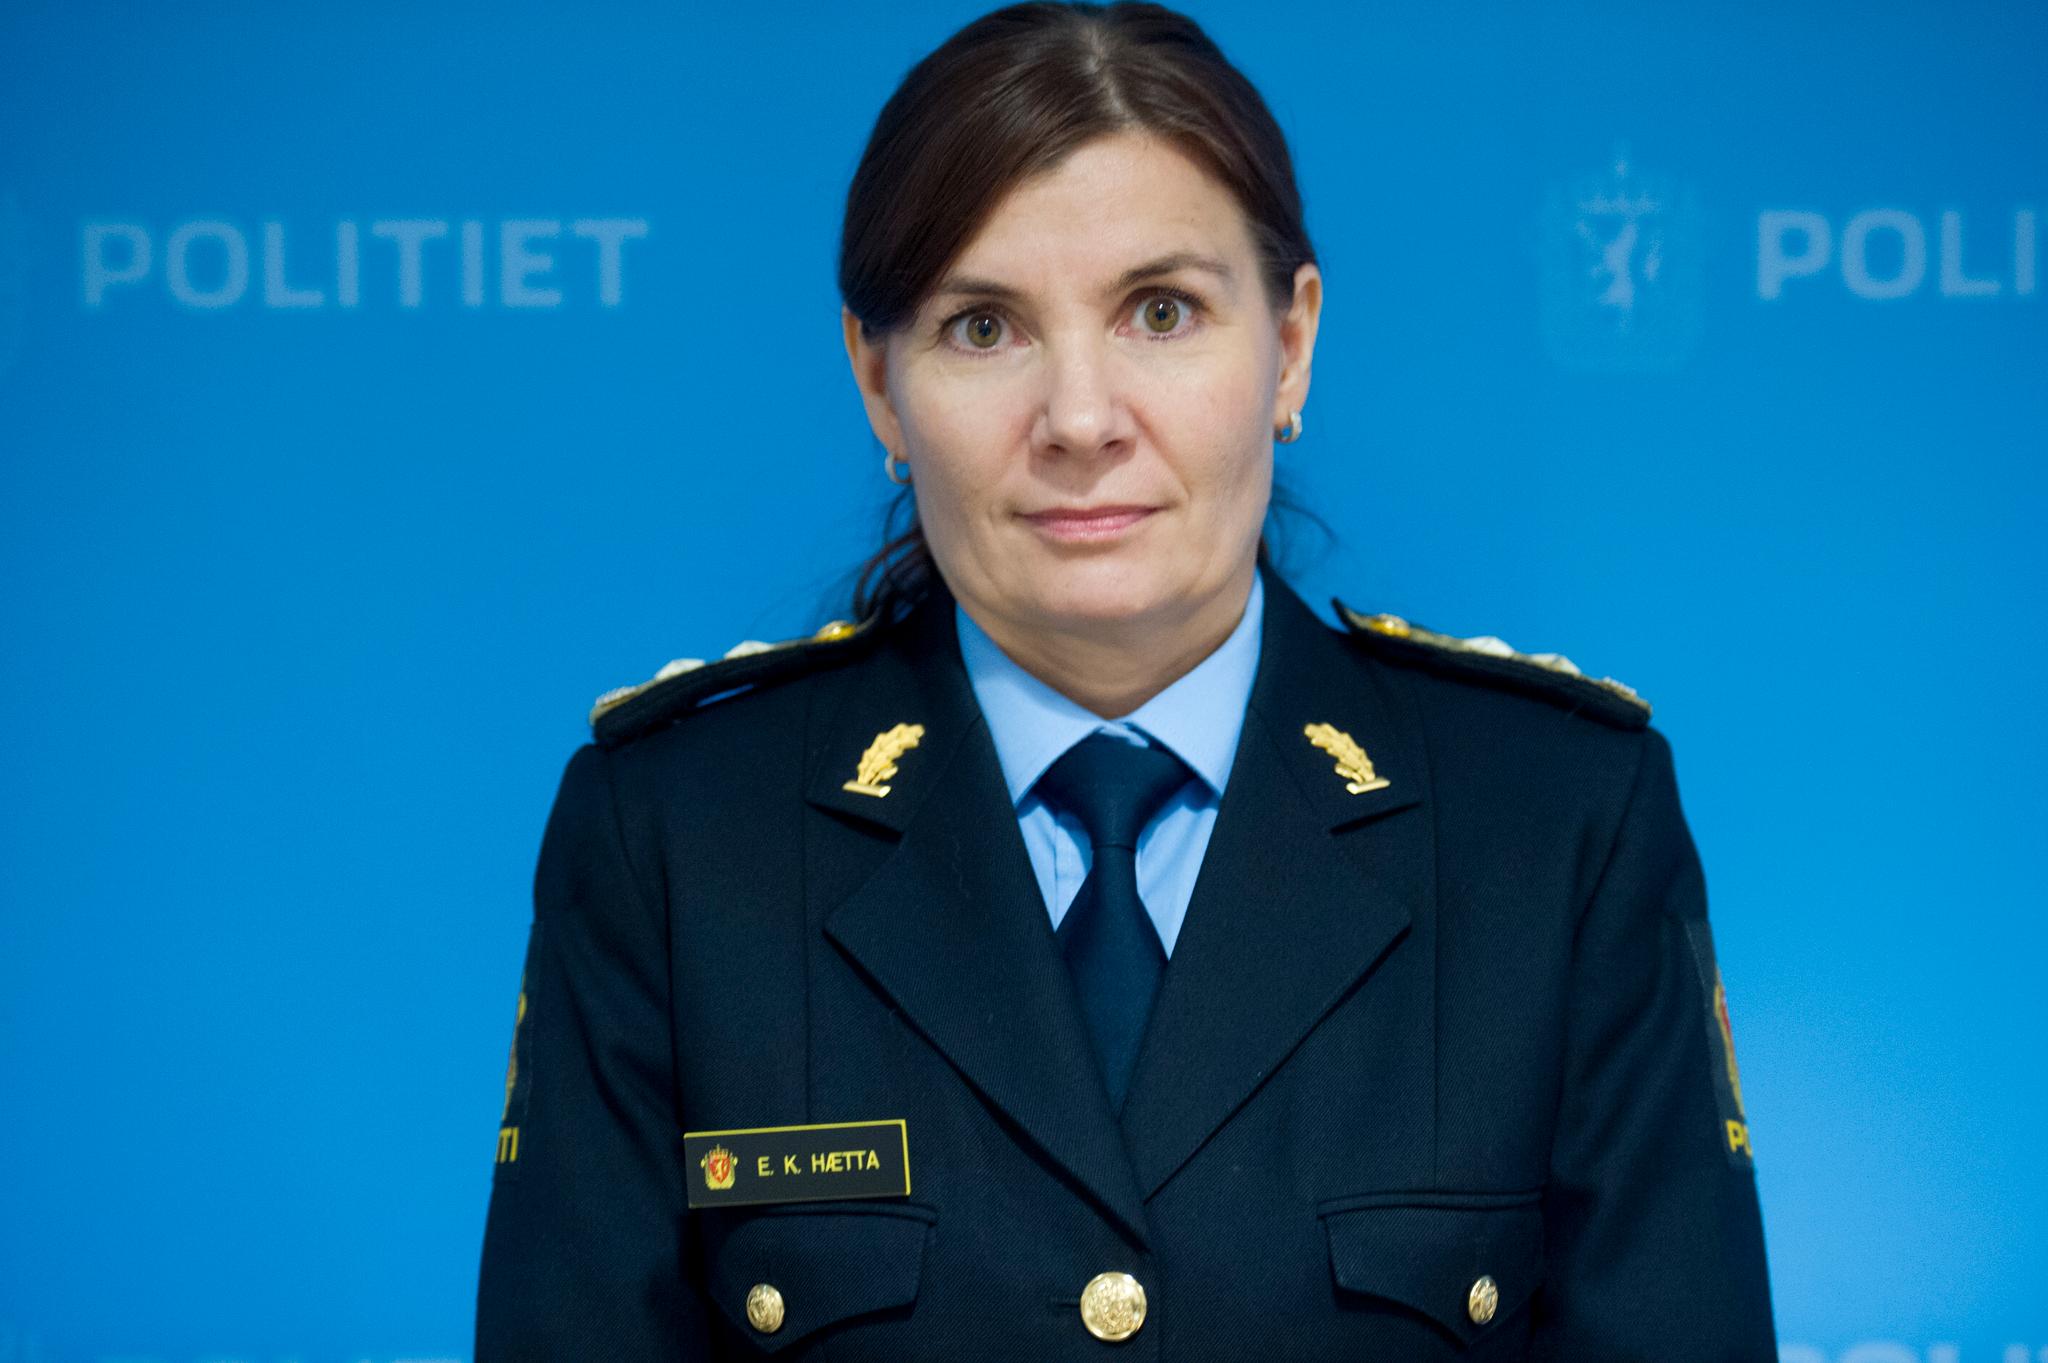 Politimester Ellen Katrine Hætta mener etterforskningen mot henne skyldes en falsk anklage. 